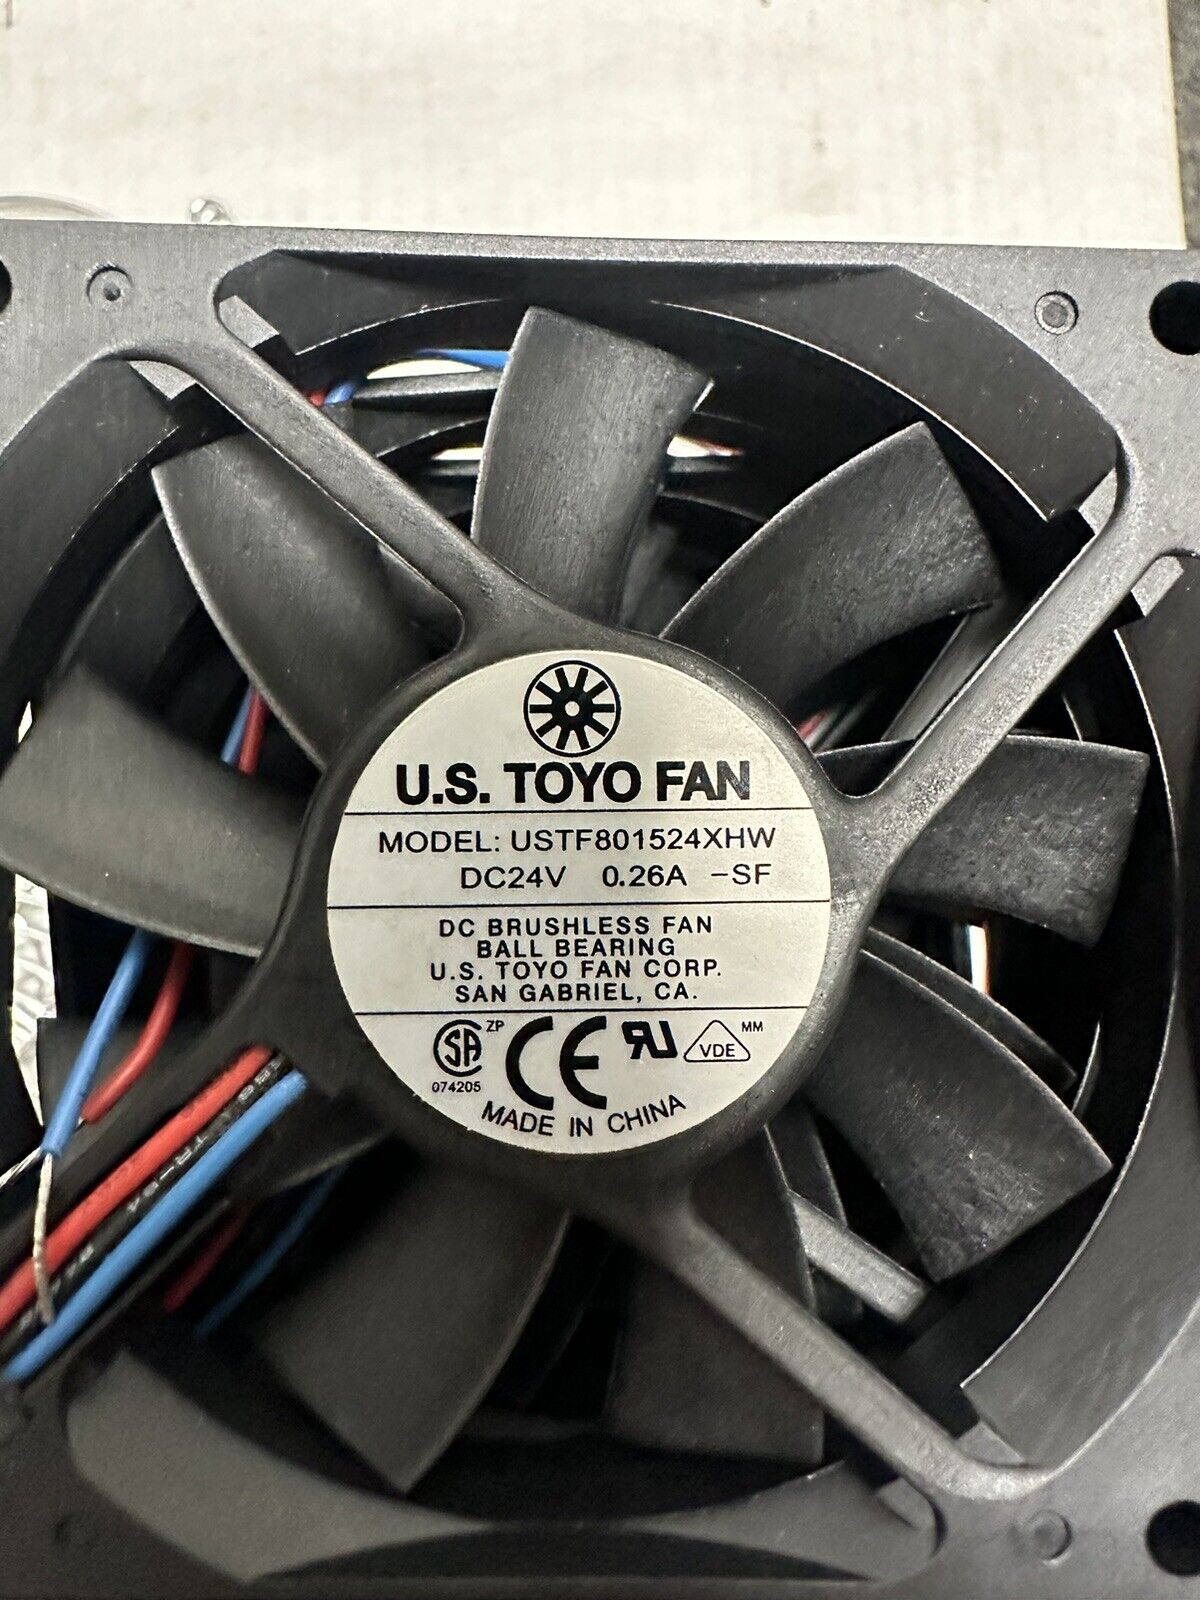 US TOYO FAN USTF801524XHW DC 24V 0.26A -SF Brushless Fan Lot With Grill 10 Pcs